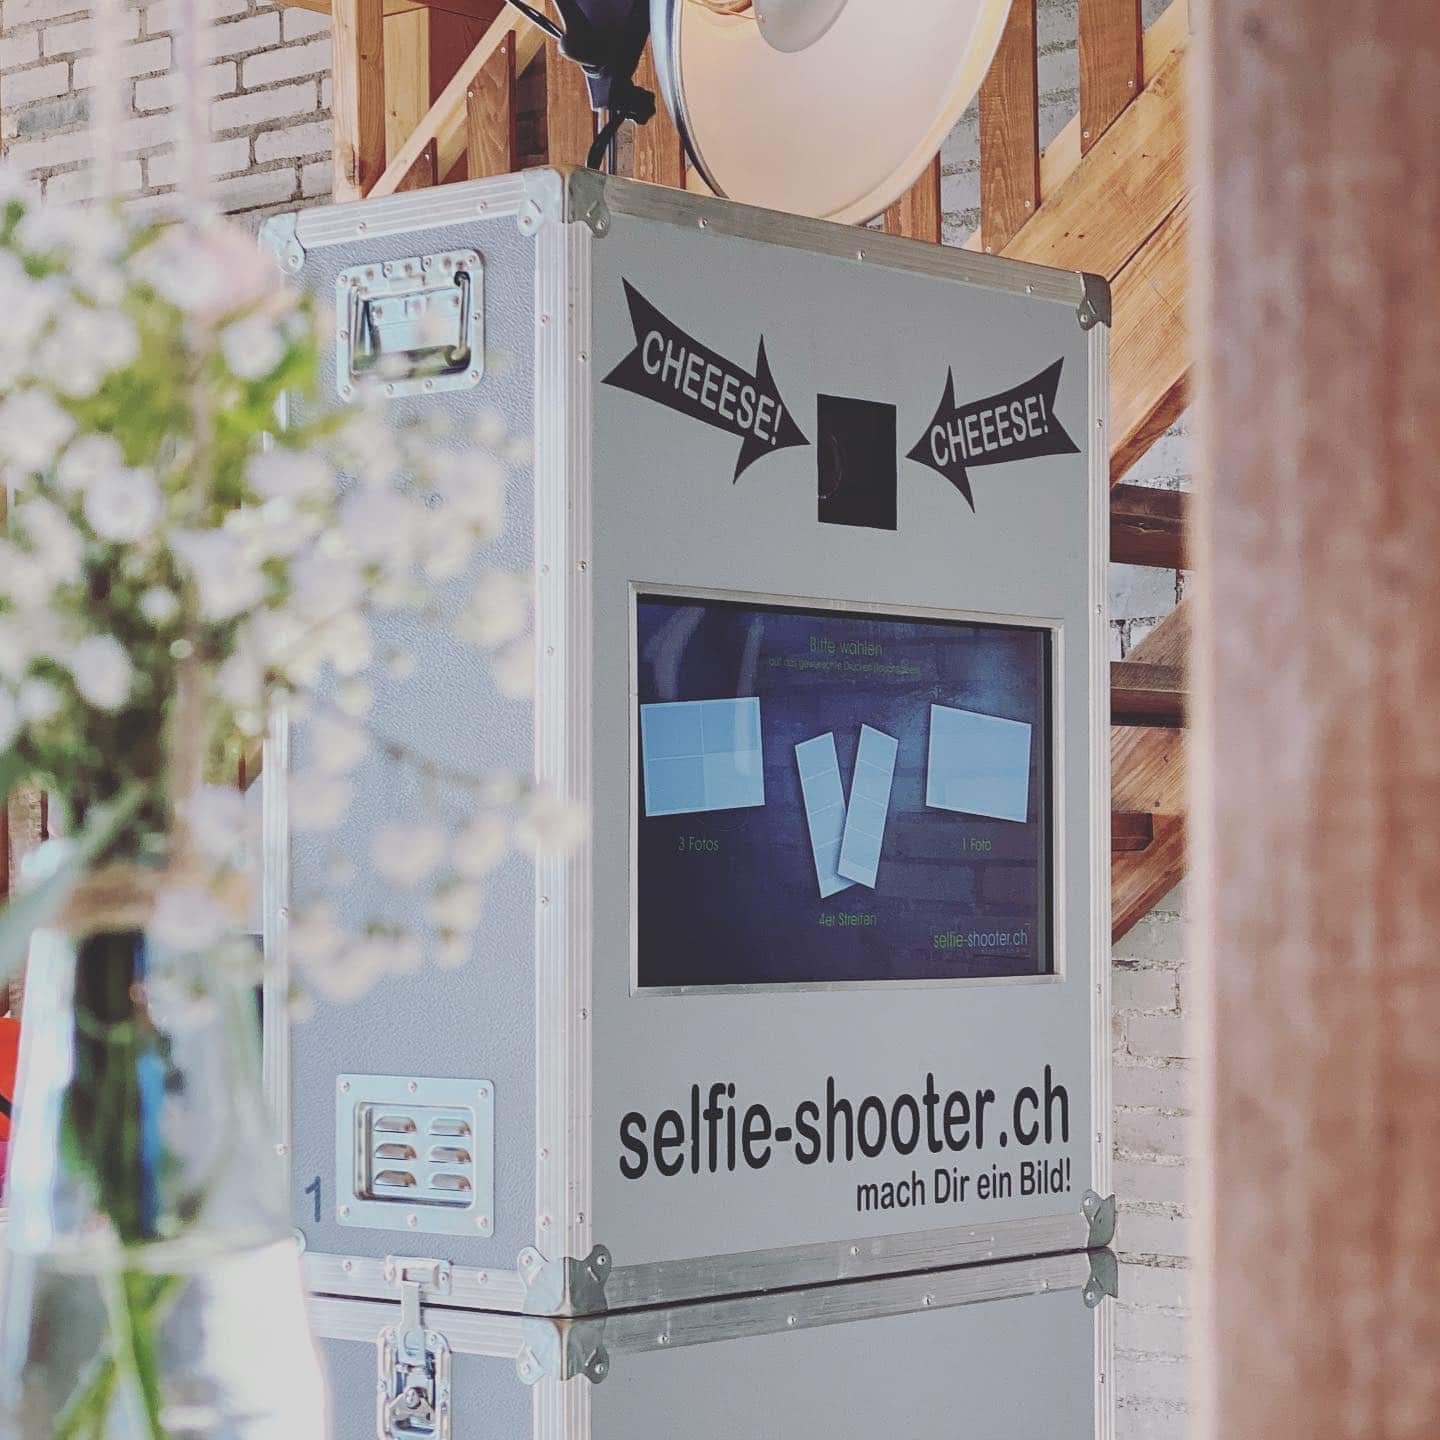 Eine Fotobox bei einer Hochzeit sorgt immer für viel Spass und Freude… GARANTIERT! 😃👍📸. Am Weekend durfte ein Selfie Shooter bei @myswissfarm für Erinnerungsbilder sorgen. 🎉📸
.
#fotobox #fotoboxmieten #photobooth #hochzeit #hochzeitsplanung #hochzeitsplaner #braut #event